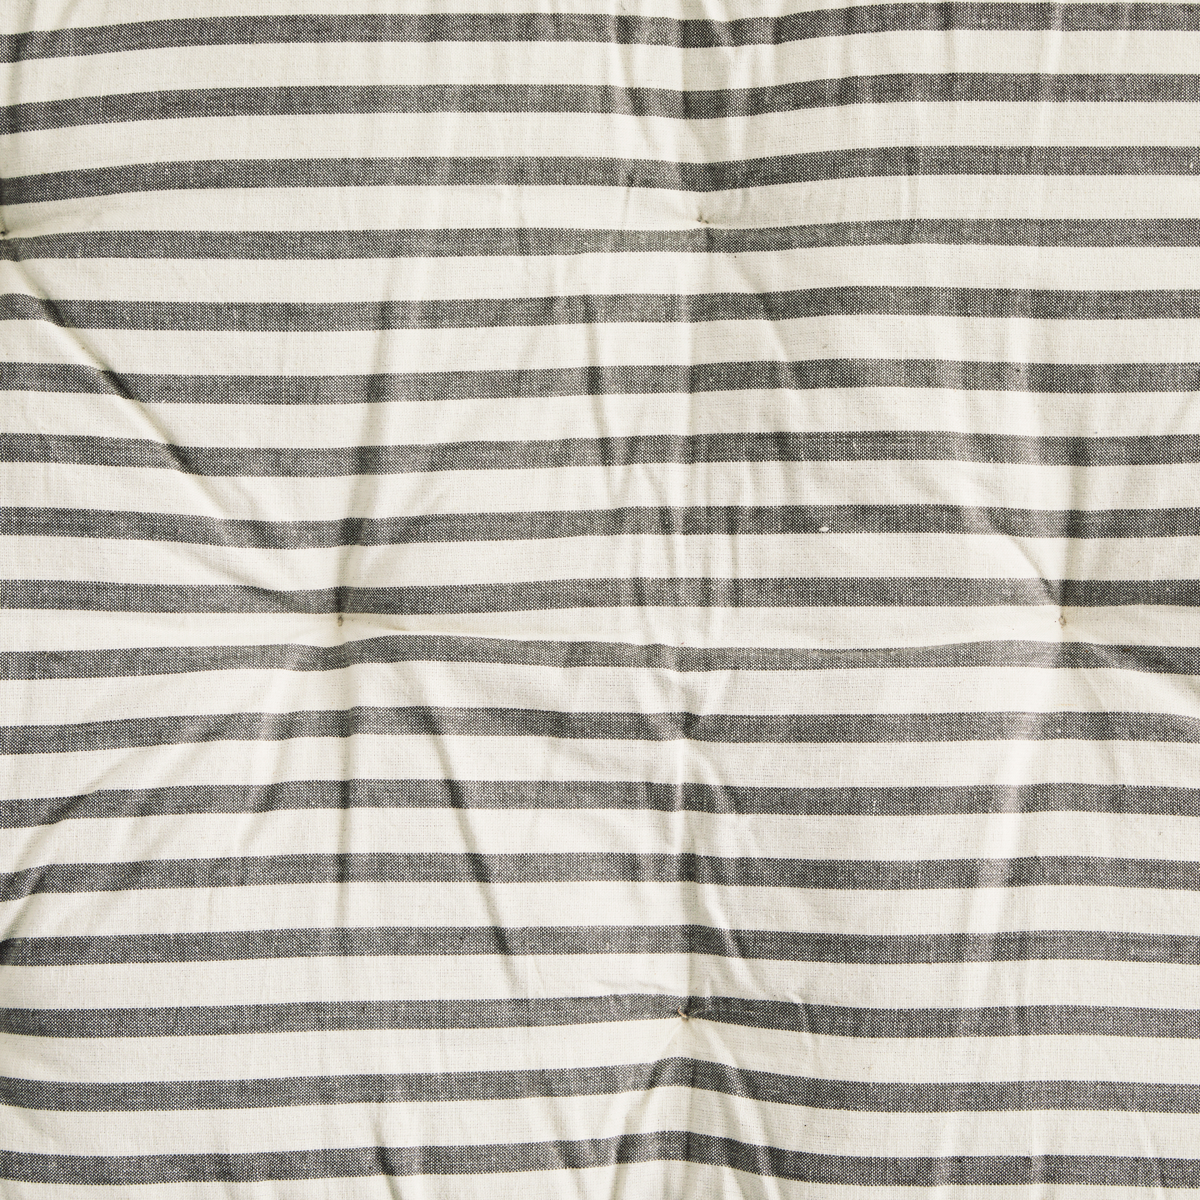 Striped Cotton Mattress Grey 60cm x 100cm